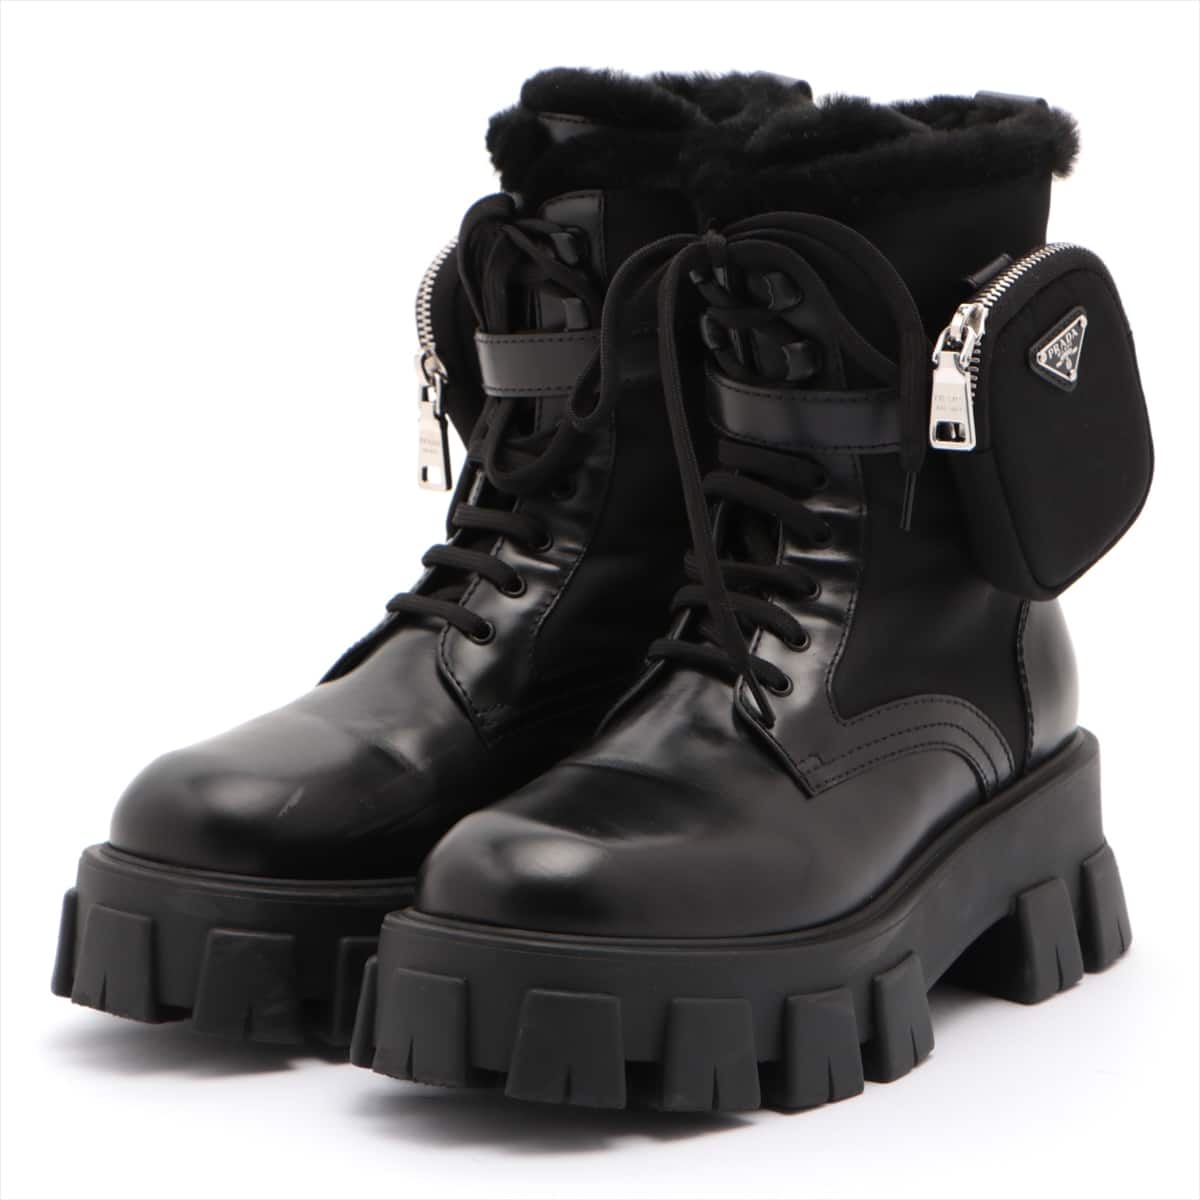 Prada Nylon & Leather Boots 38 1/2 Unisex Black Monolith Mouton Detachable pouch